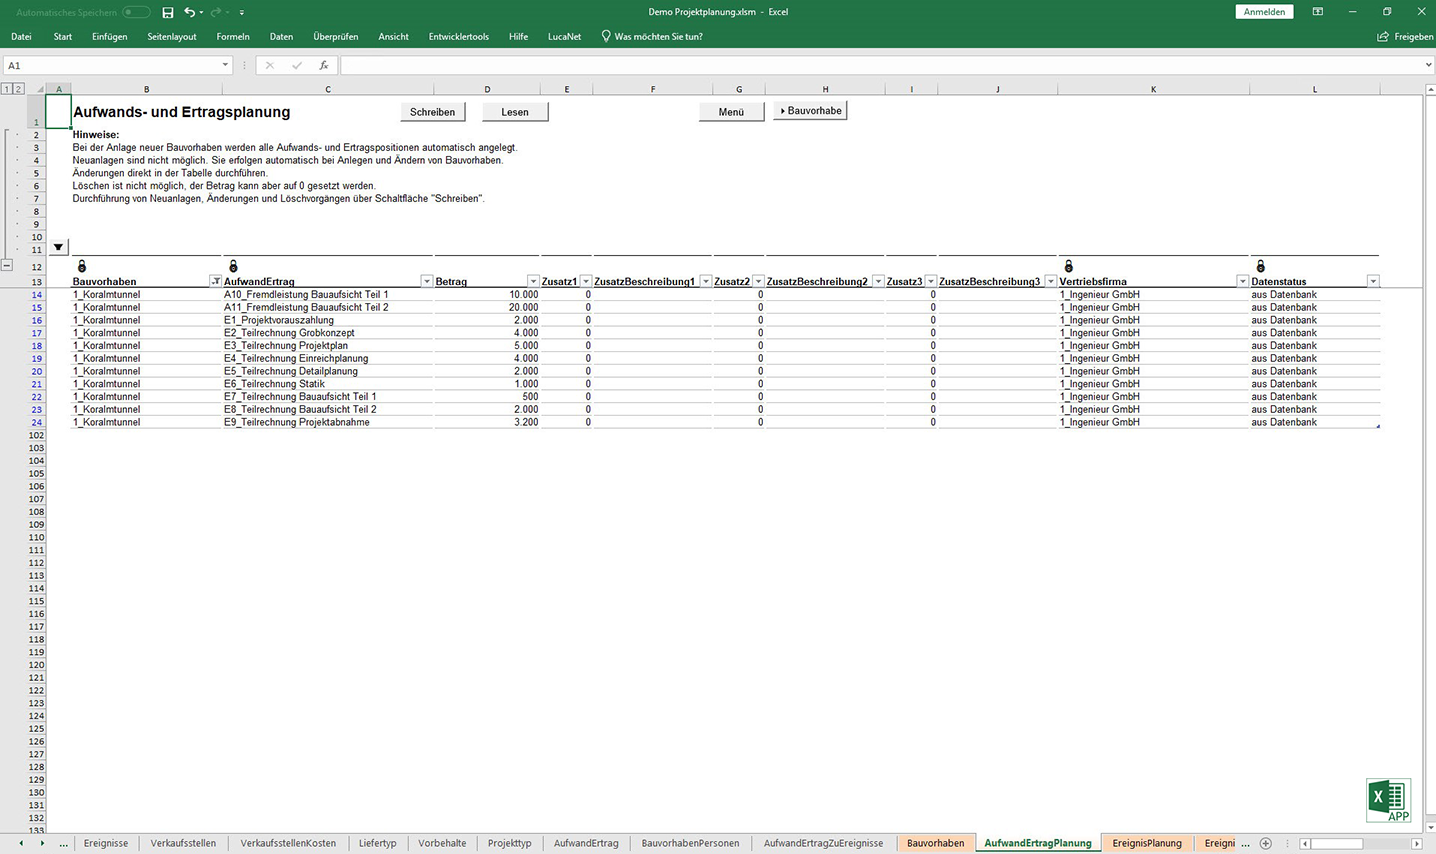 Aufwands- und Ertragsplanung in der Excel APP "Projektplanung", von consultnetwork